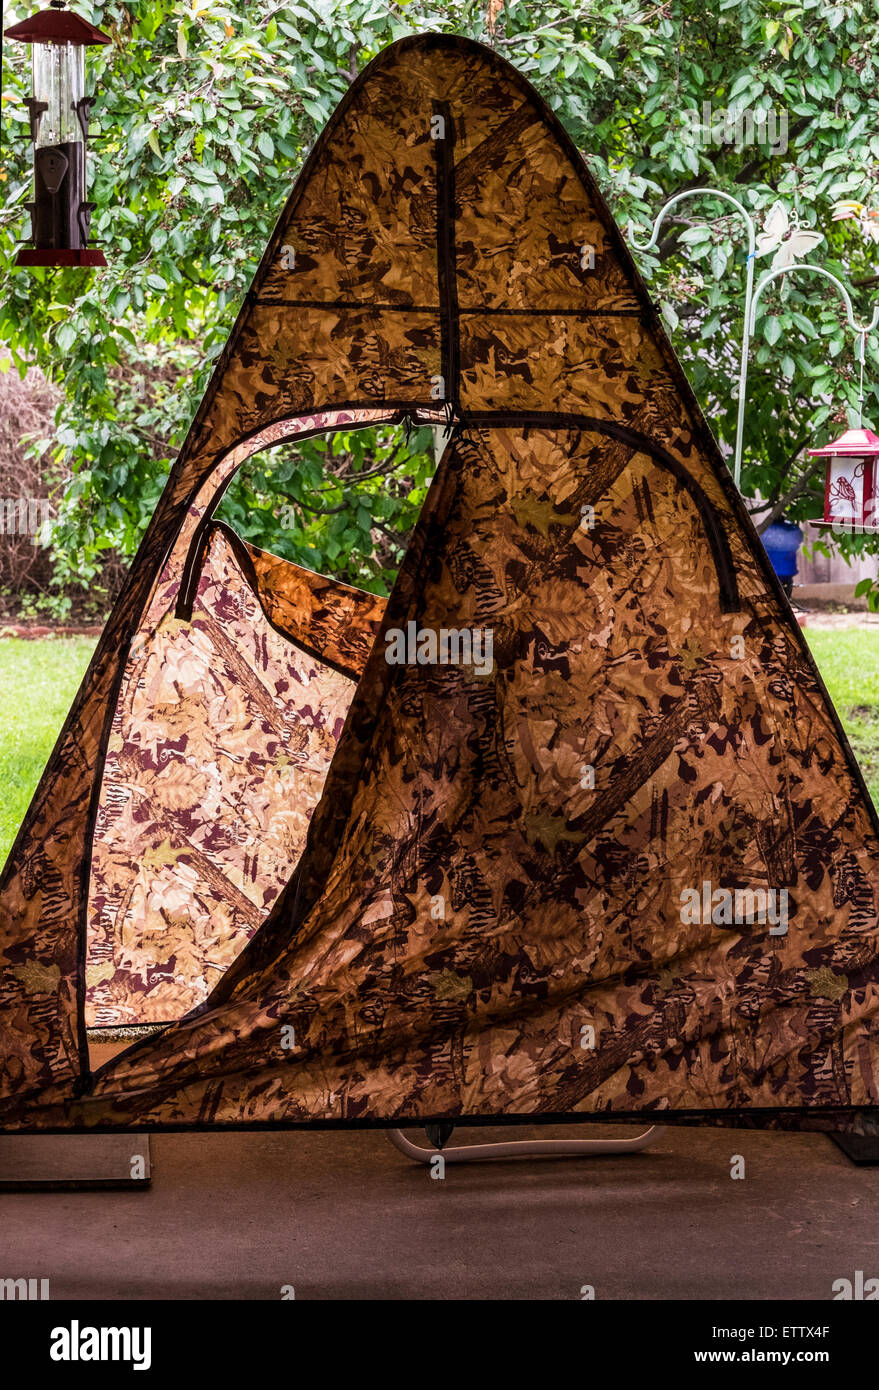 Eine Jagd verstecken Zelt, verwendet für die Verheimlichung zu fotografieren Vögel in einem Hof. Stockfoto